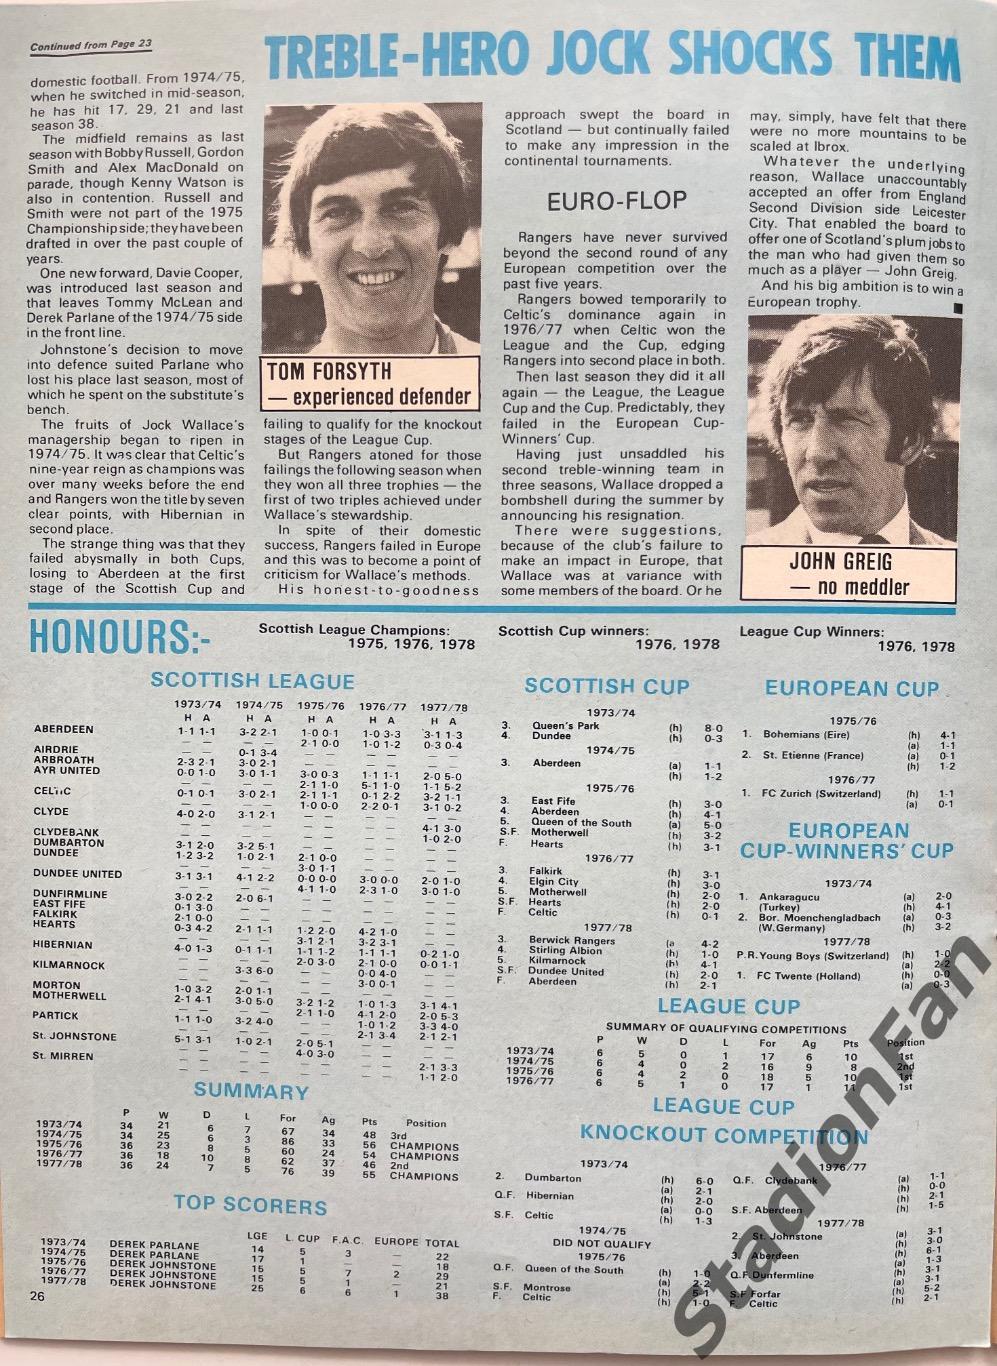 Журнал FOOTBALL - 1978 год, октябрь. 5